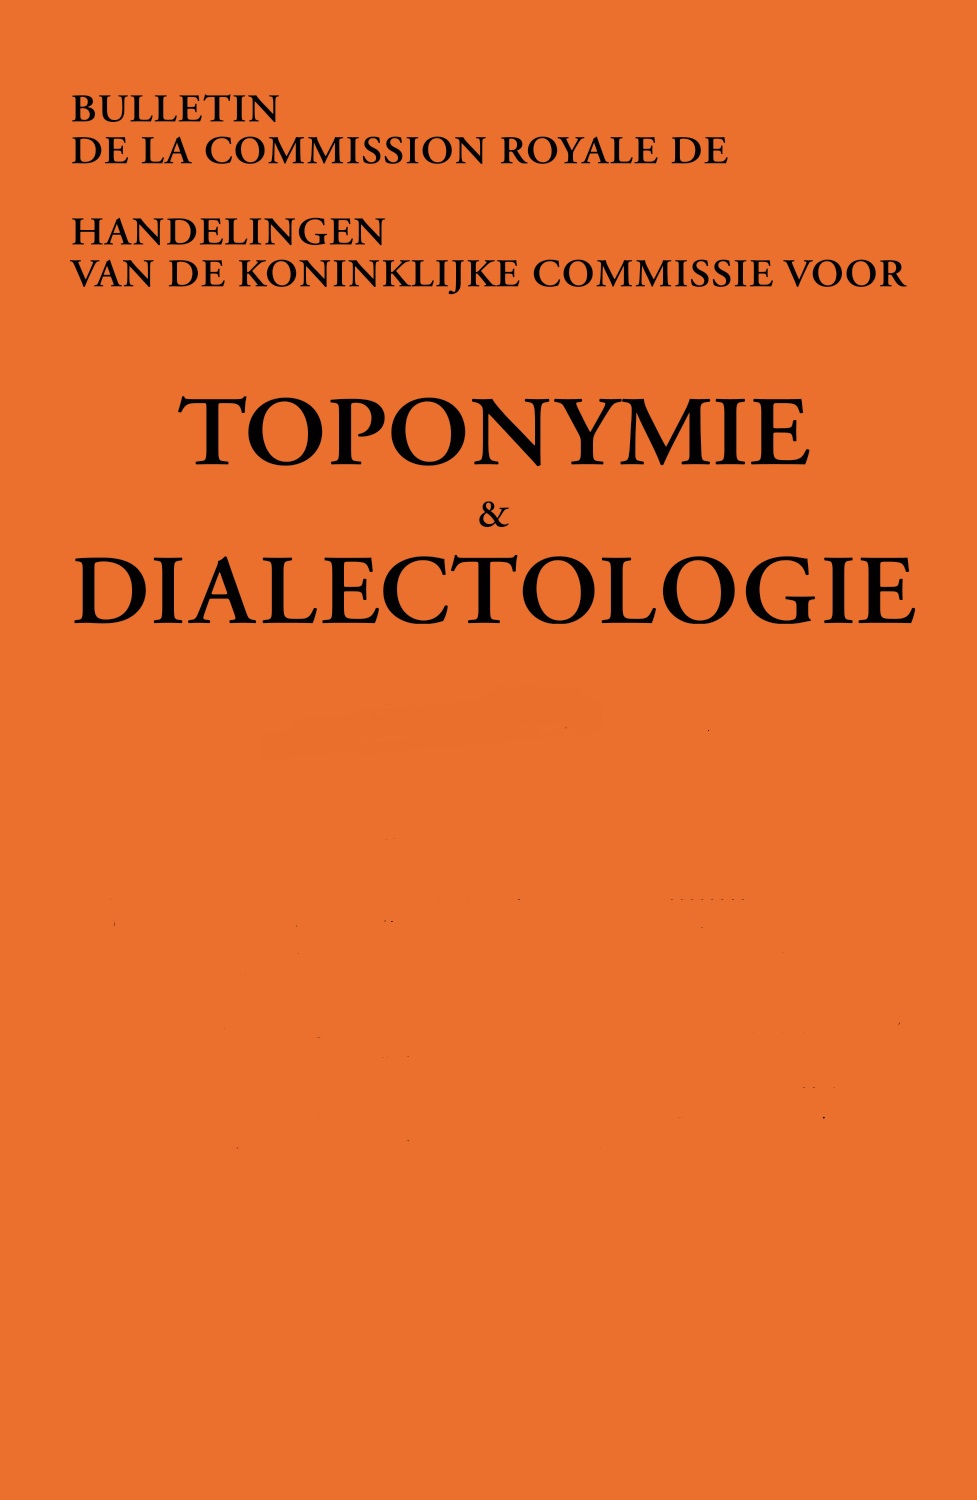 Handelingen van de Koninklijke Commissie voor Toponymie en Dialectologie